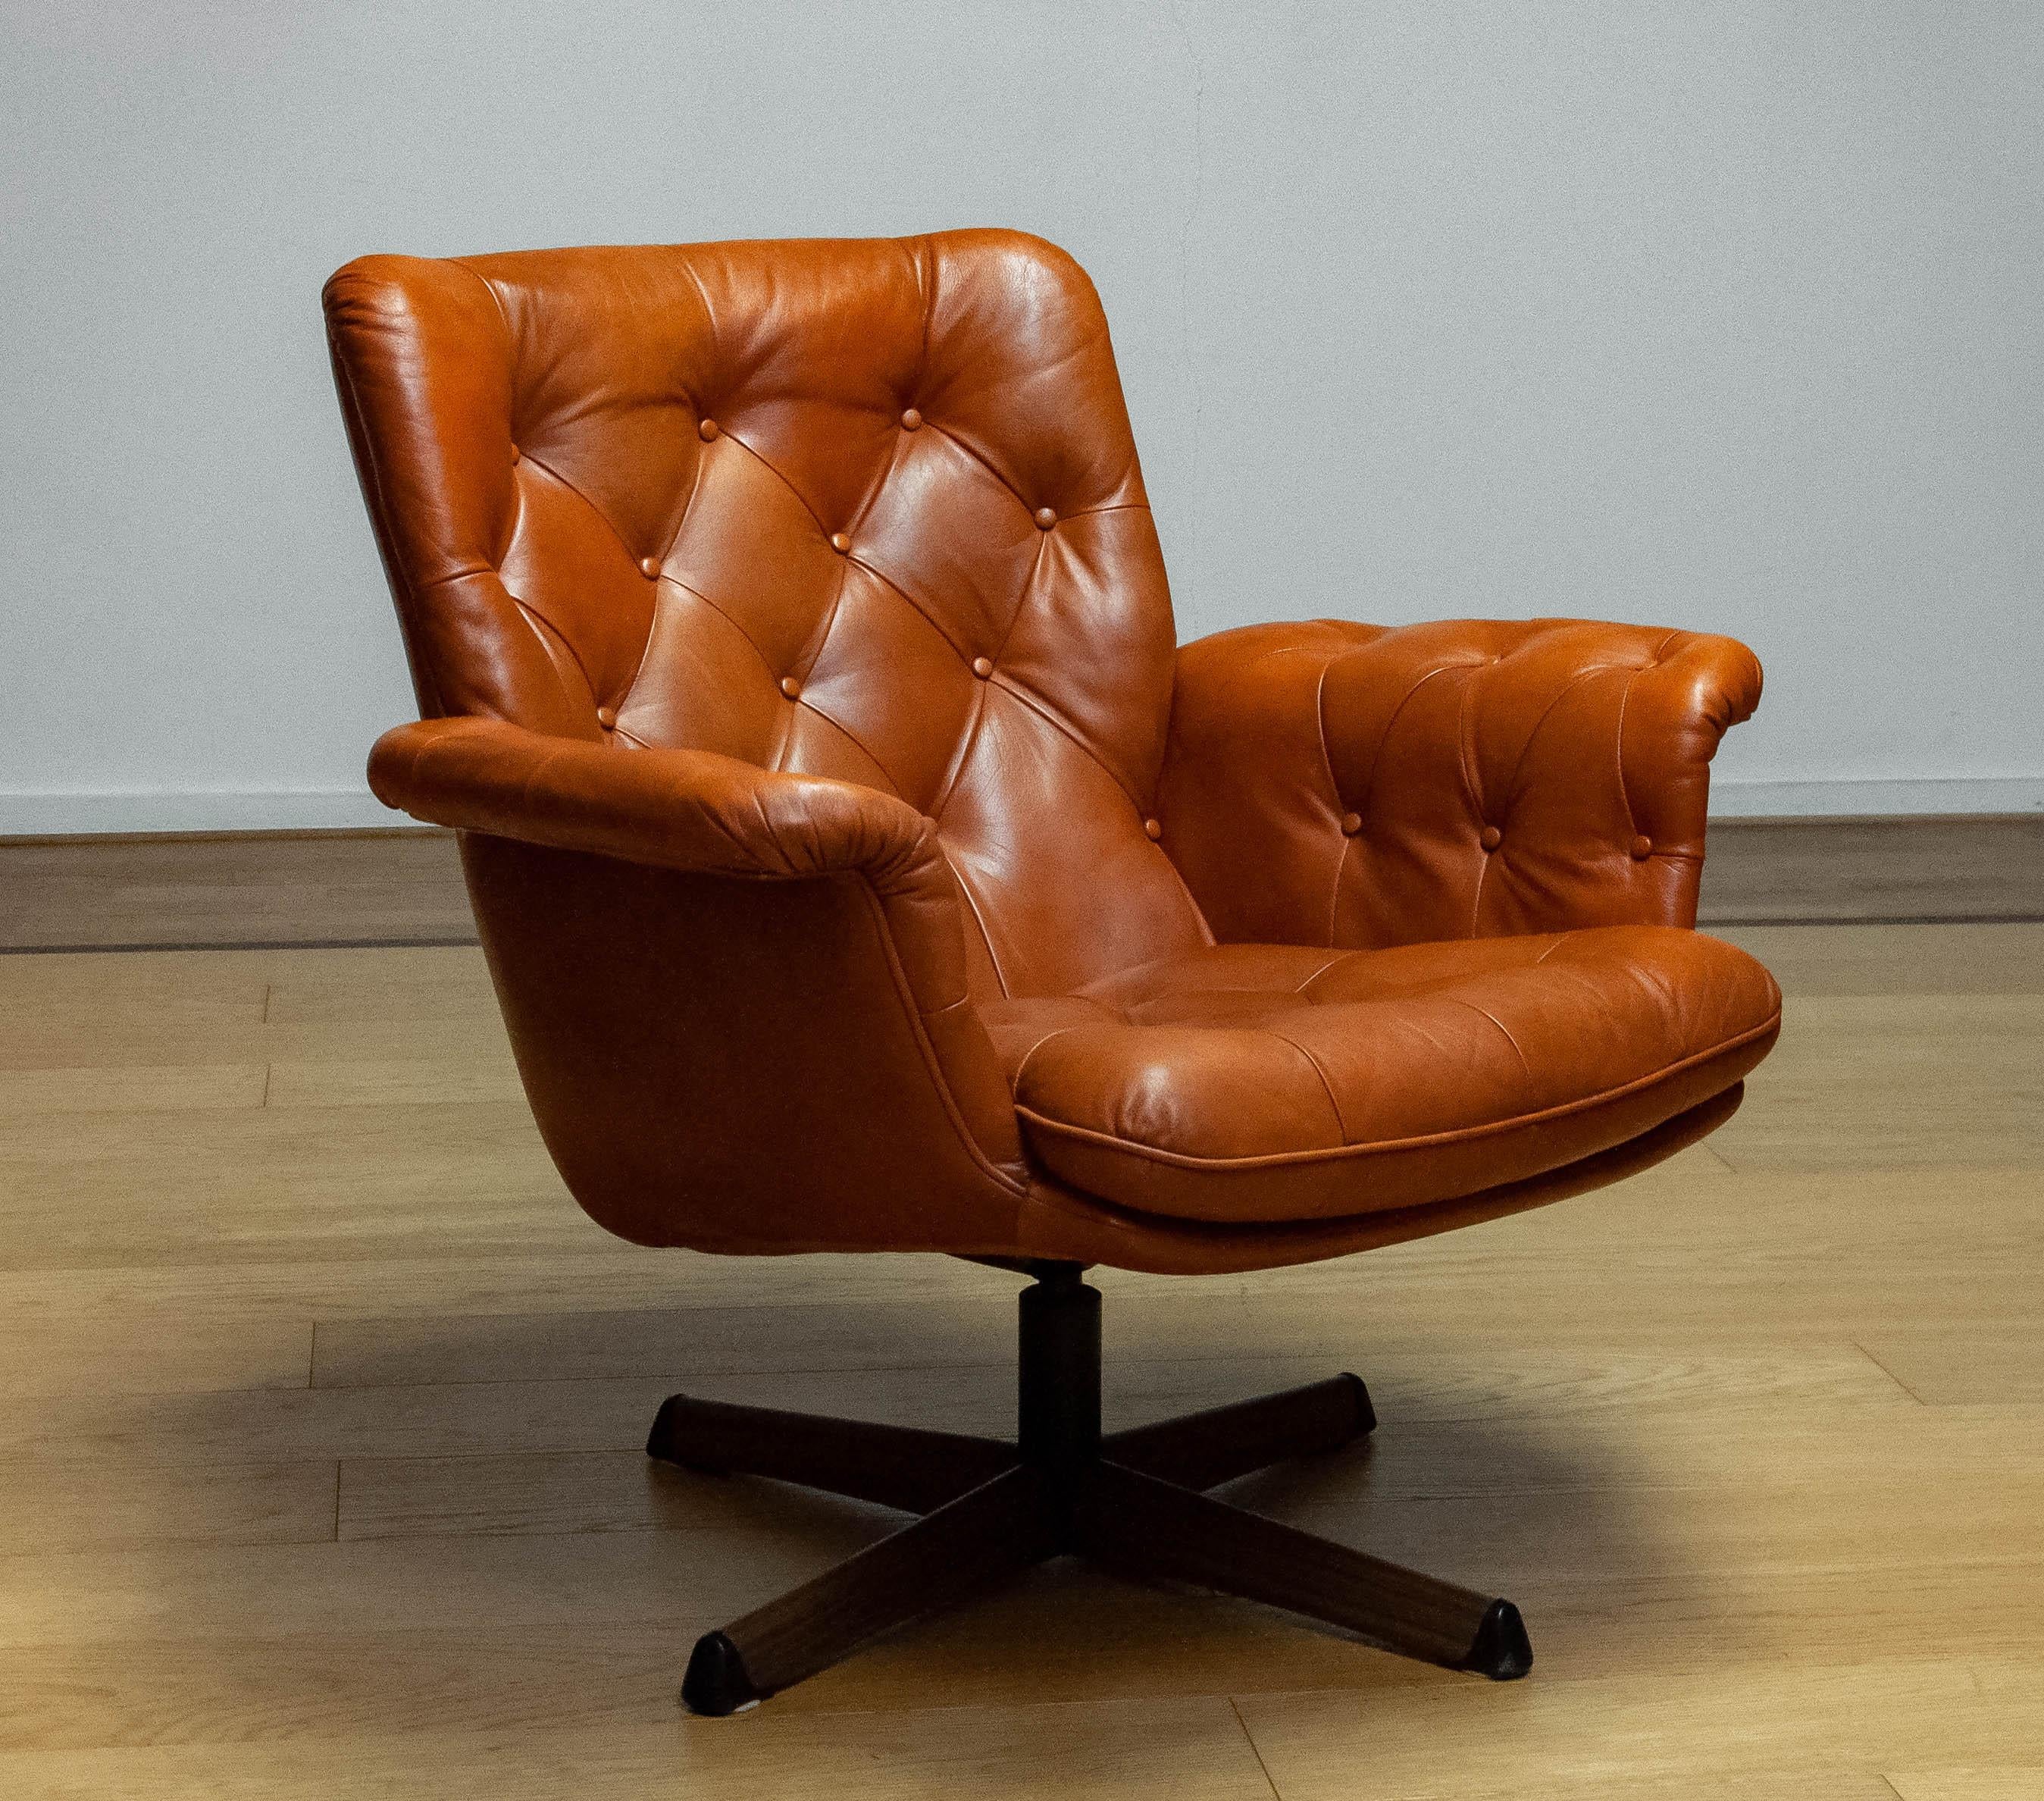 Magnifique fauteuil pivotant fabriqué par Göte Möbler Nässjö Suède, années 1960.
Cette chaise est recouverte de cuir cognac tufté et repose sur un pied pivotant en métal avec une empreinte de bois.
La chaise est très confortable et s'intègre